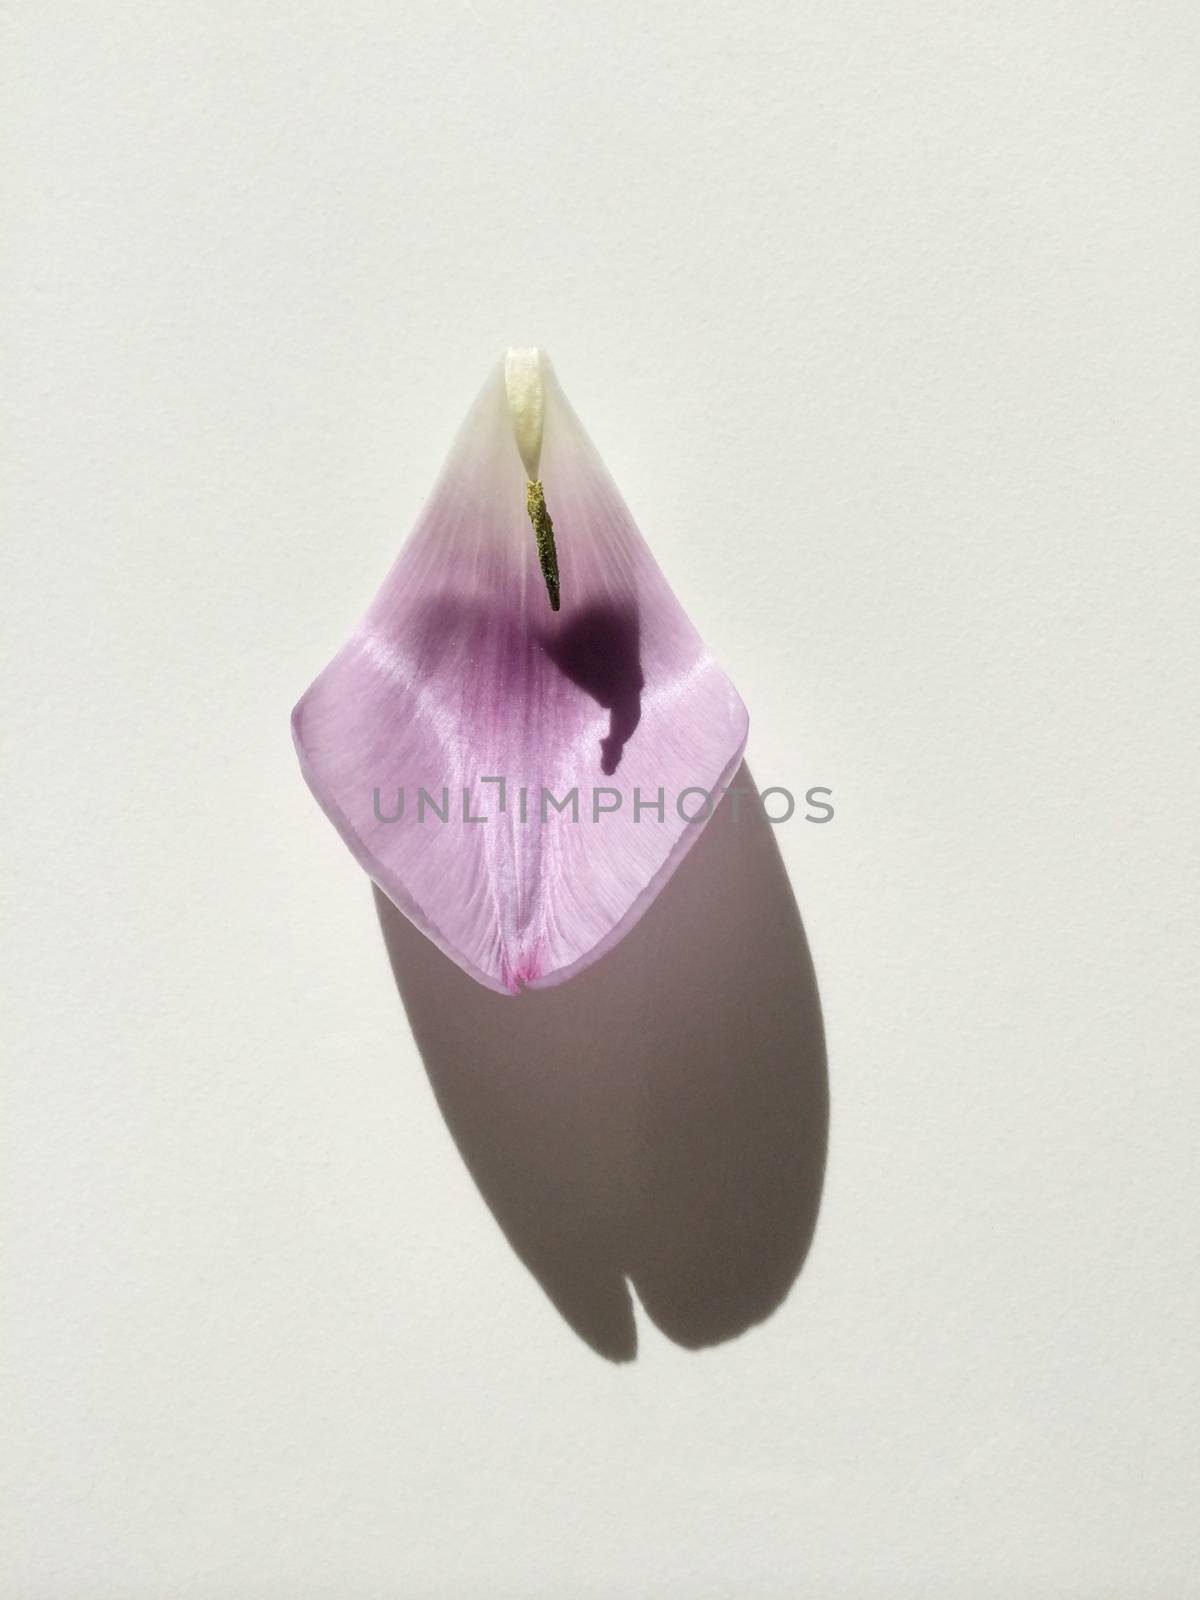 Purple tulip petal on white